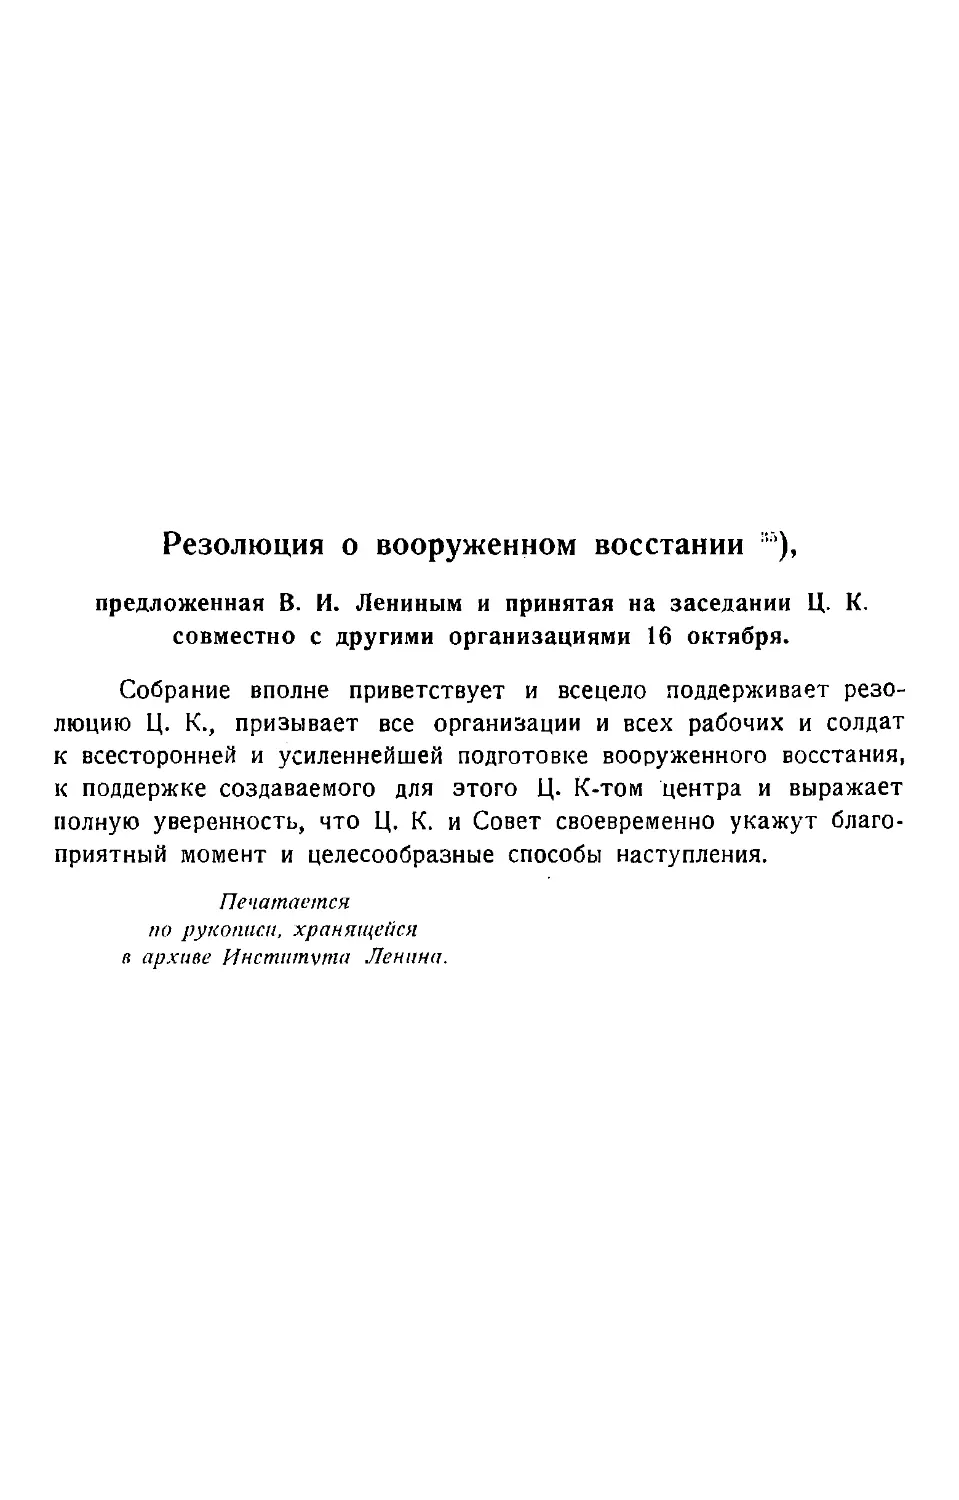 Резолюция о вооруженном восстании, предложенная В. И. Лениным и принятая на заседании Ц. К. совместно с другими организациями. 16 октября.